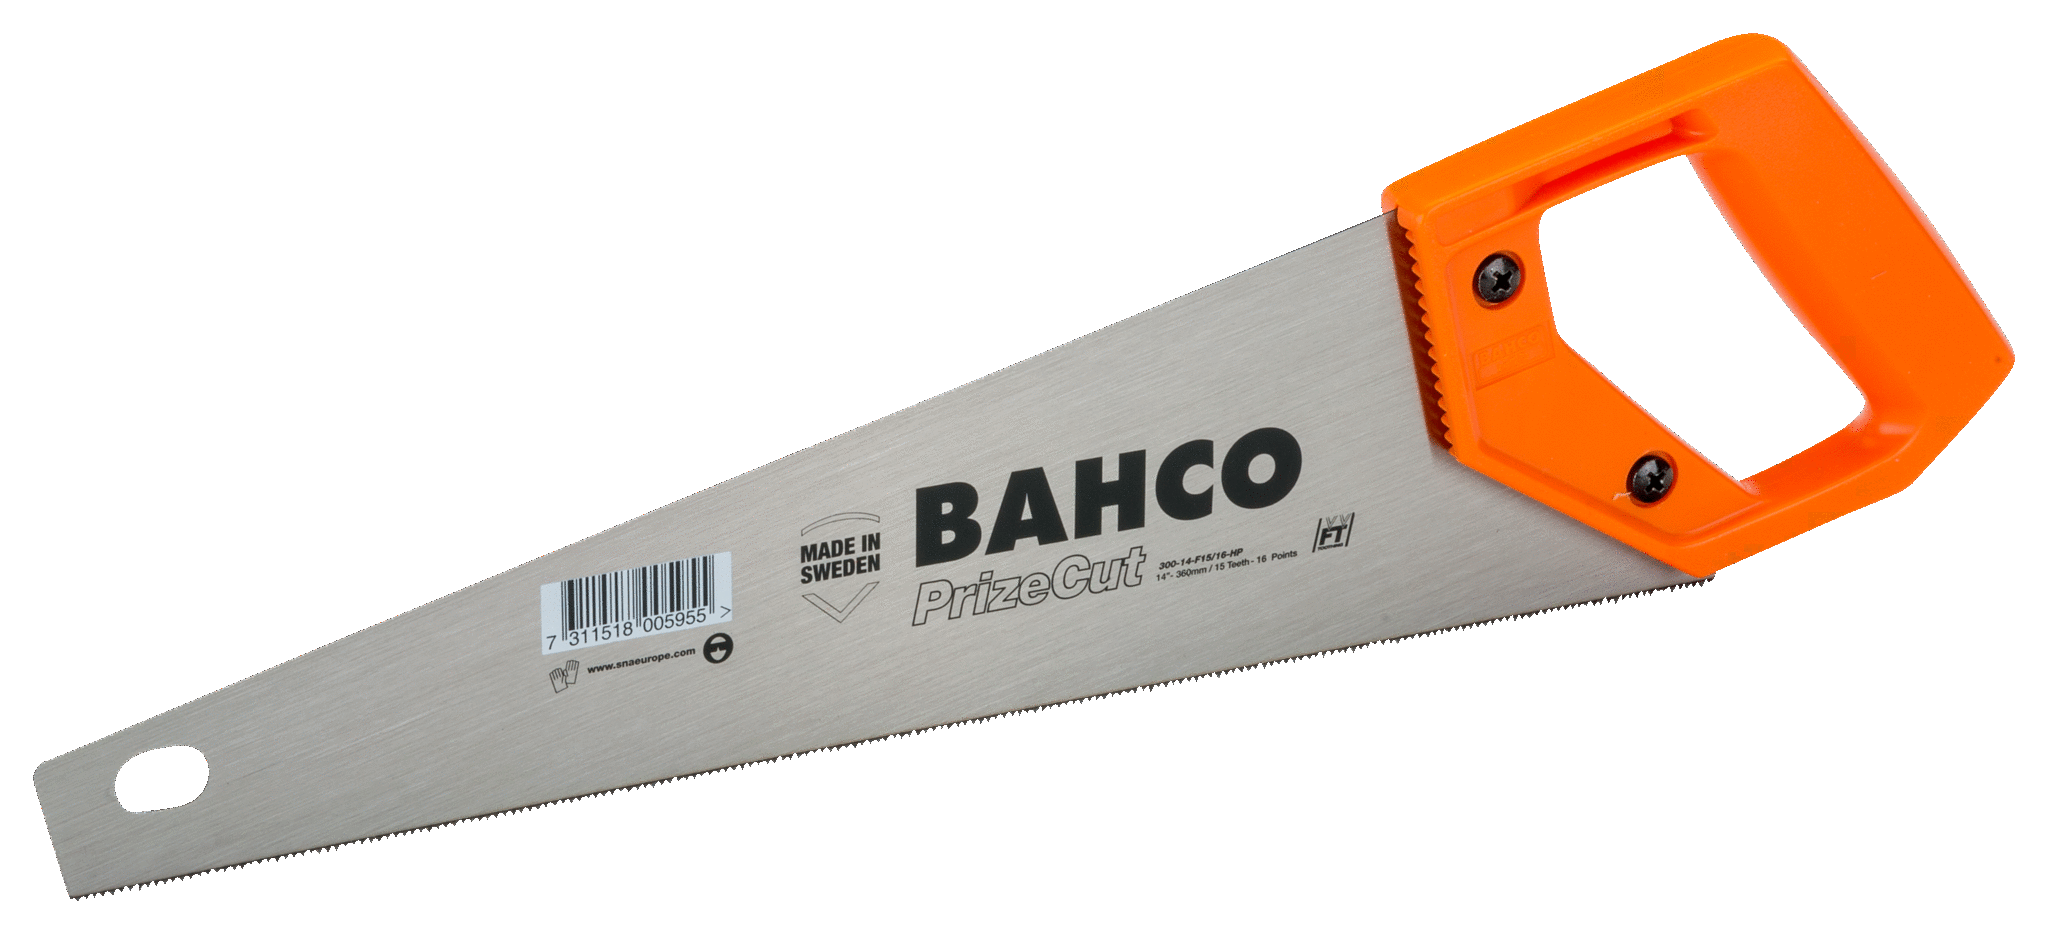 360mm Bahco Bahco General Purpose Handsaw 